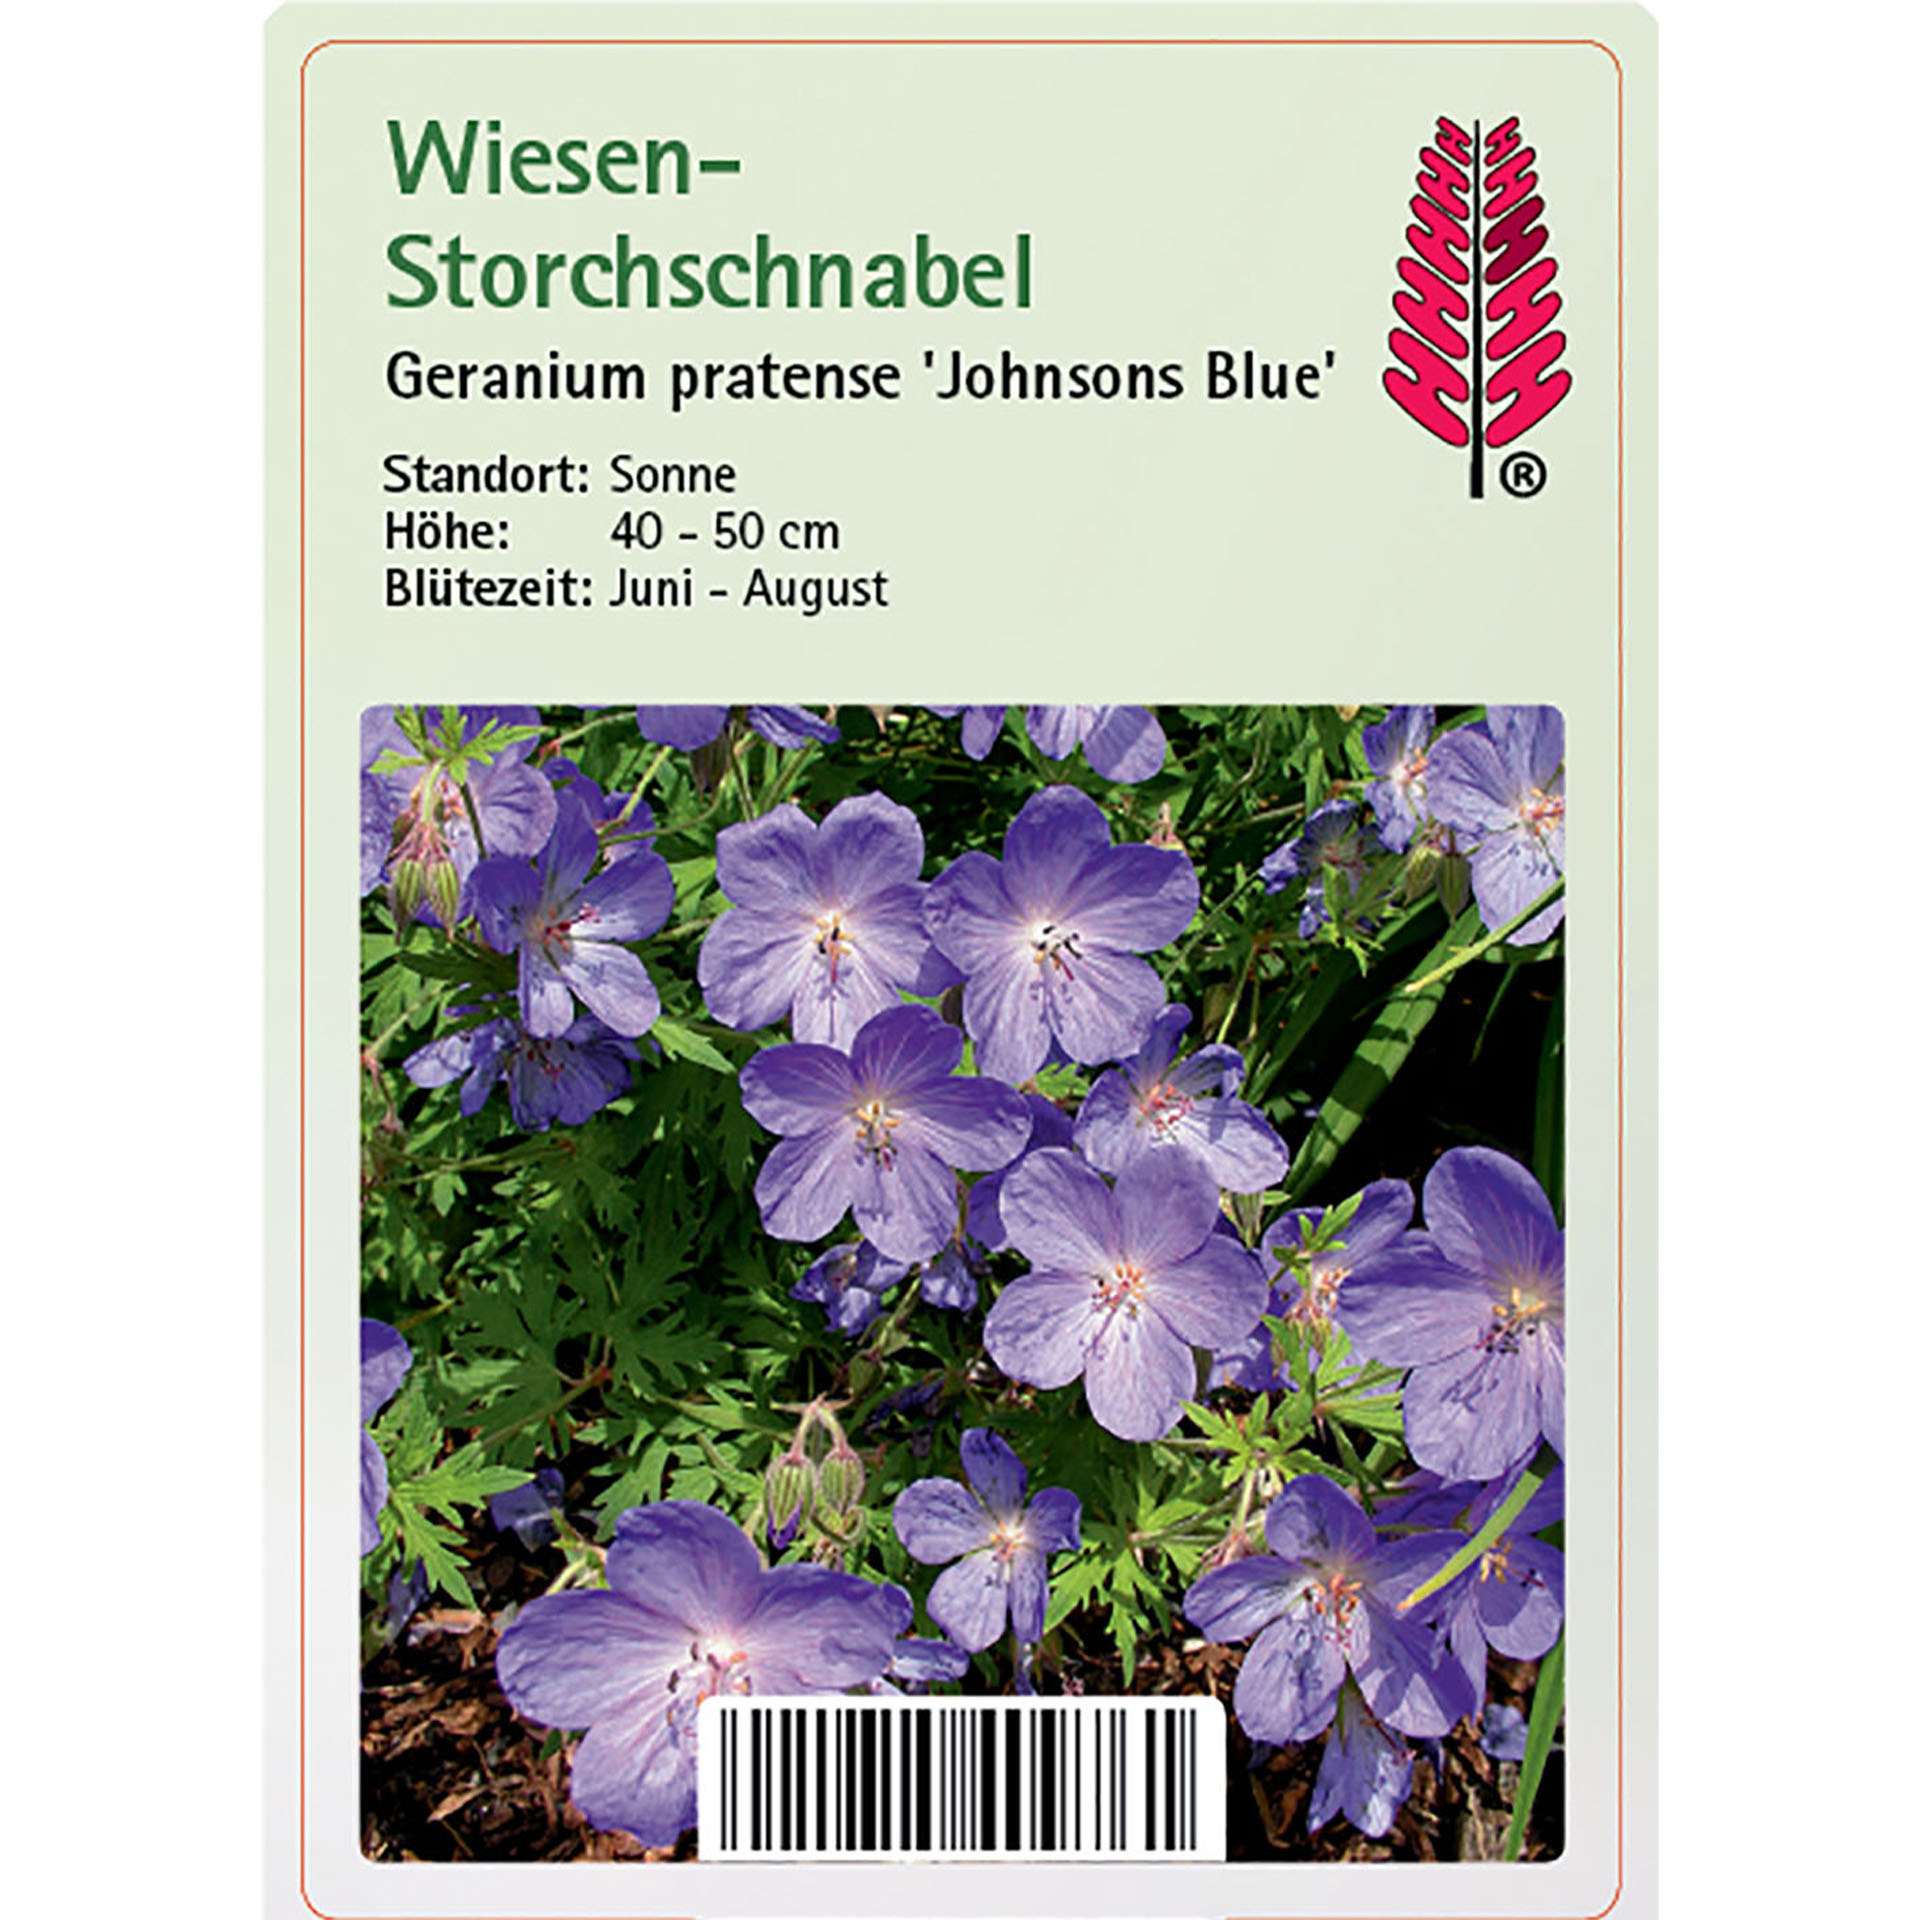 Wiesen-Storchschnabel - Geranium pratense 'Johnsons Blue', 9cm Topf